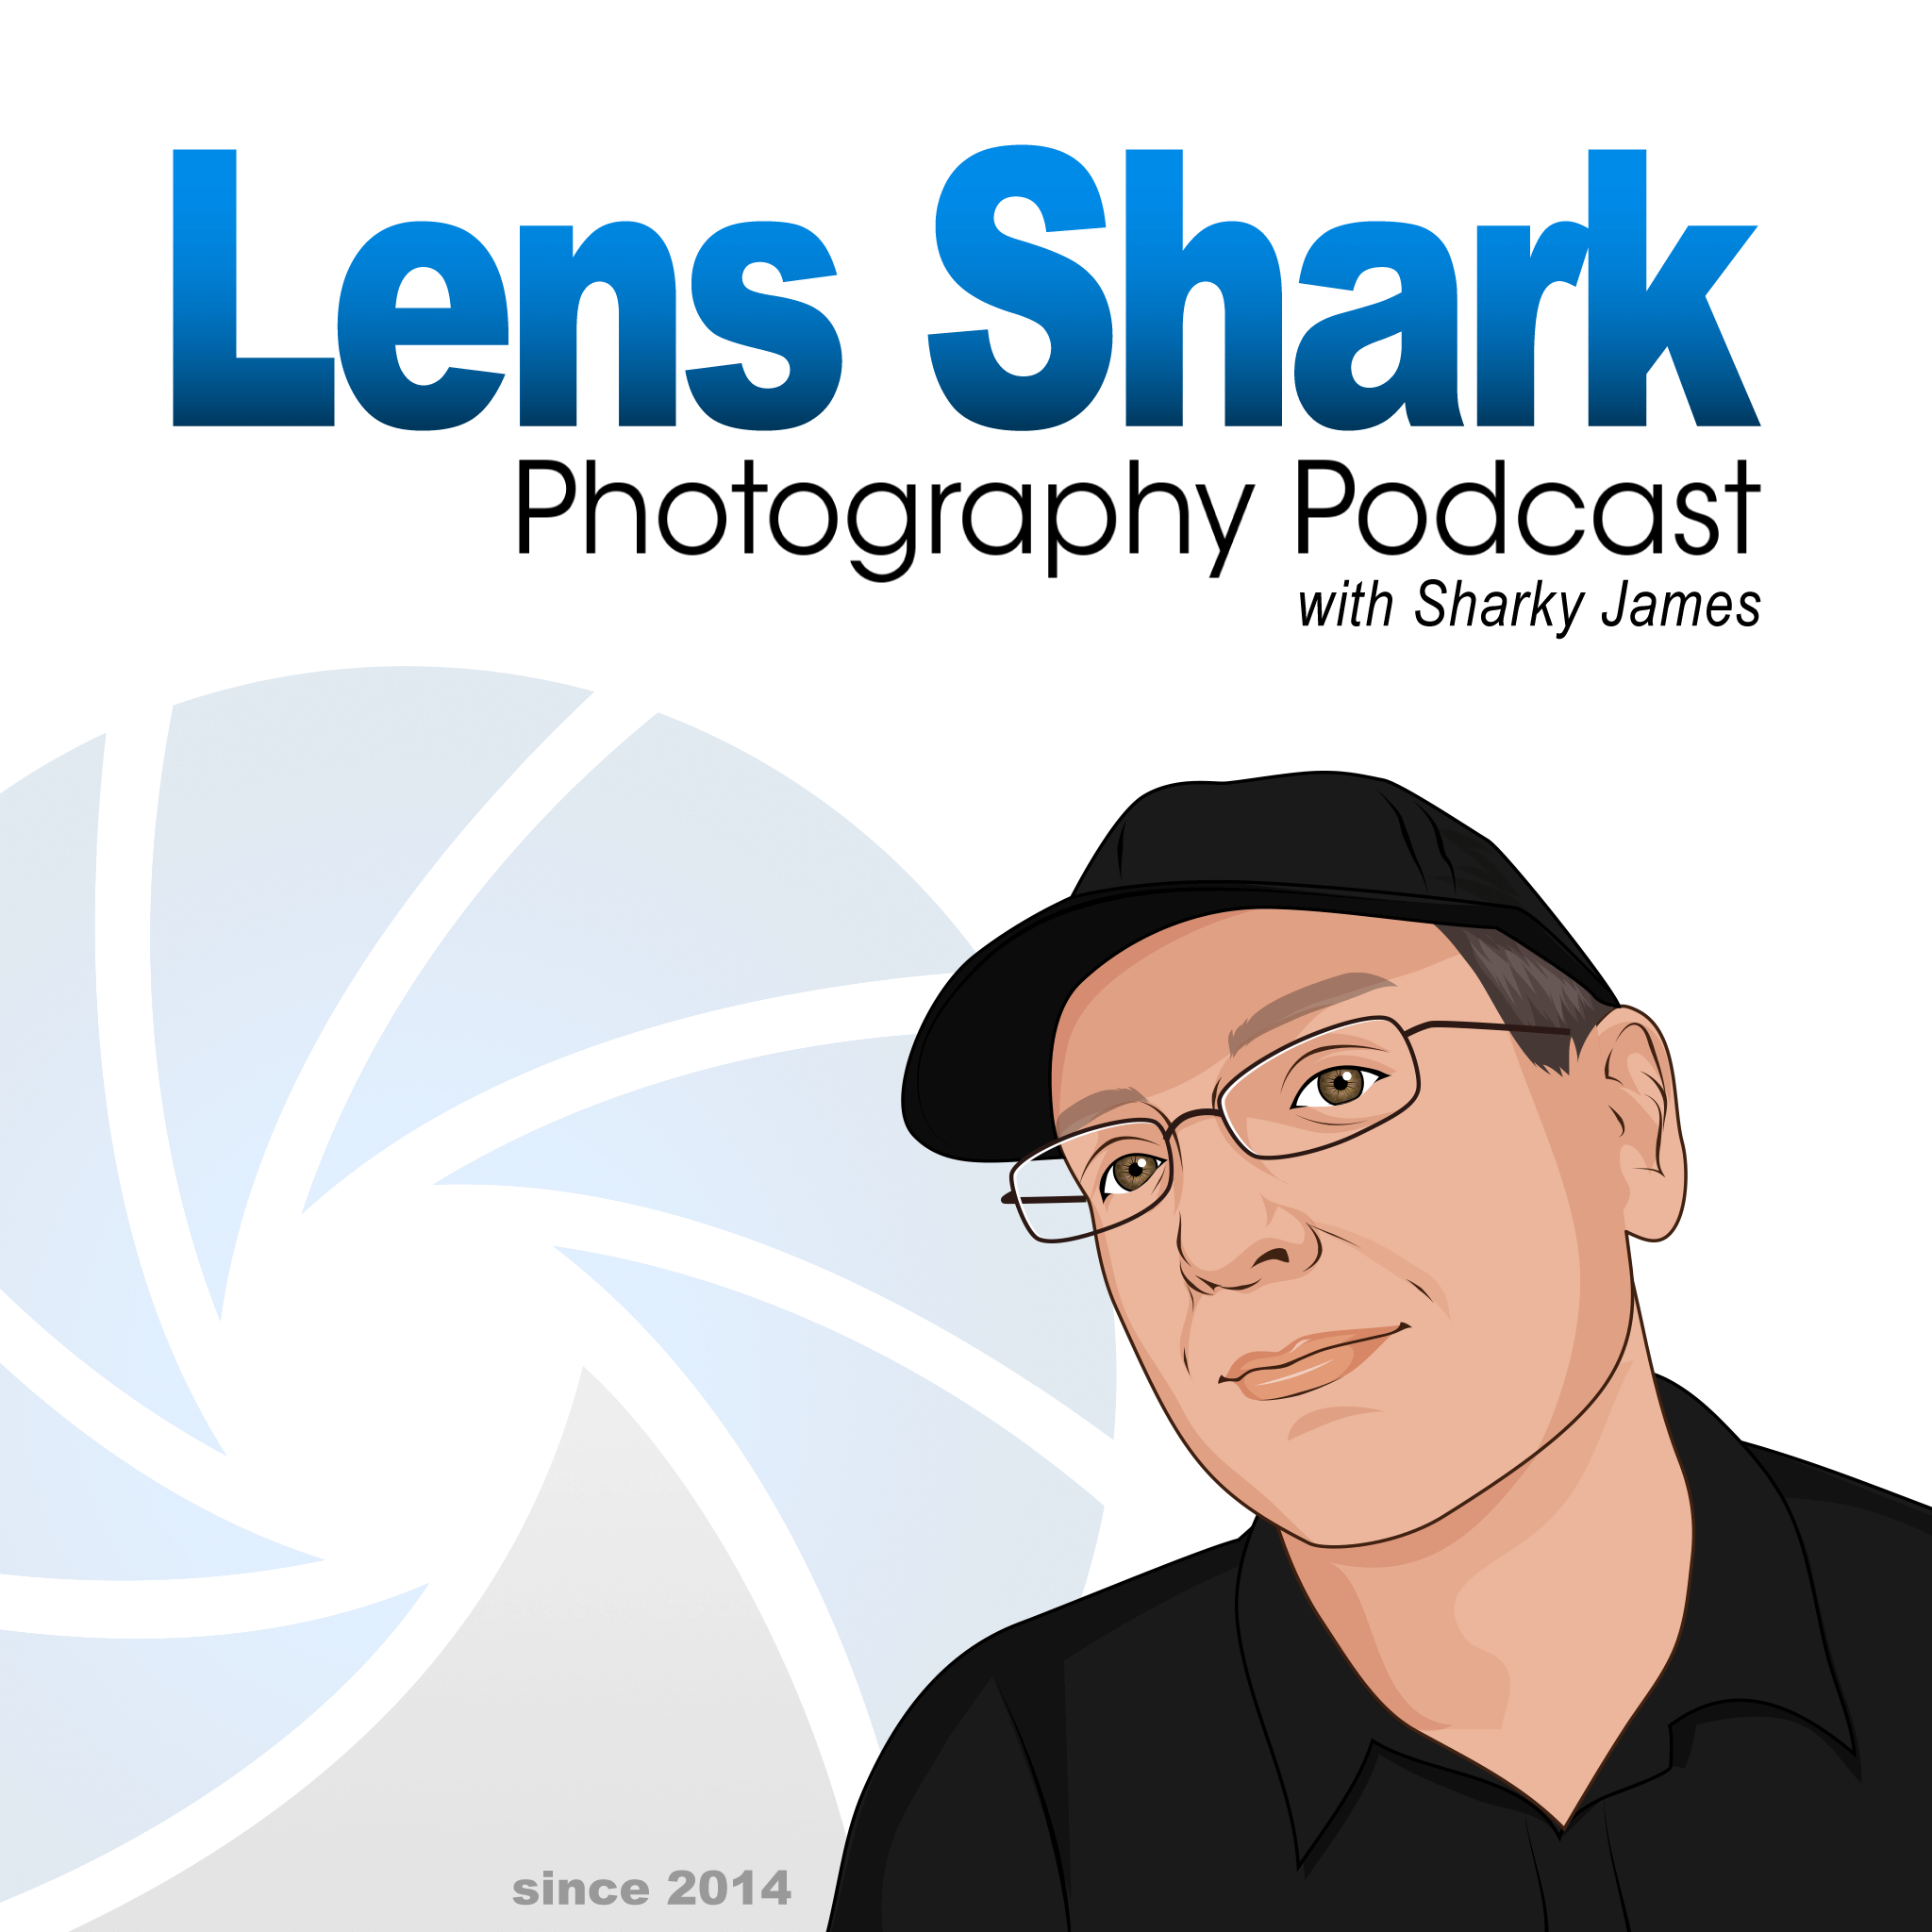 Lens Shark Photography Podcast